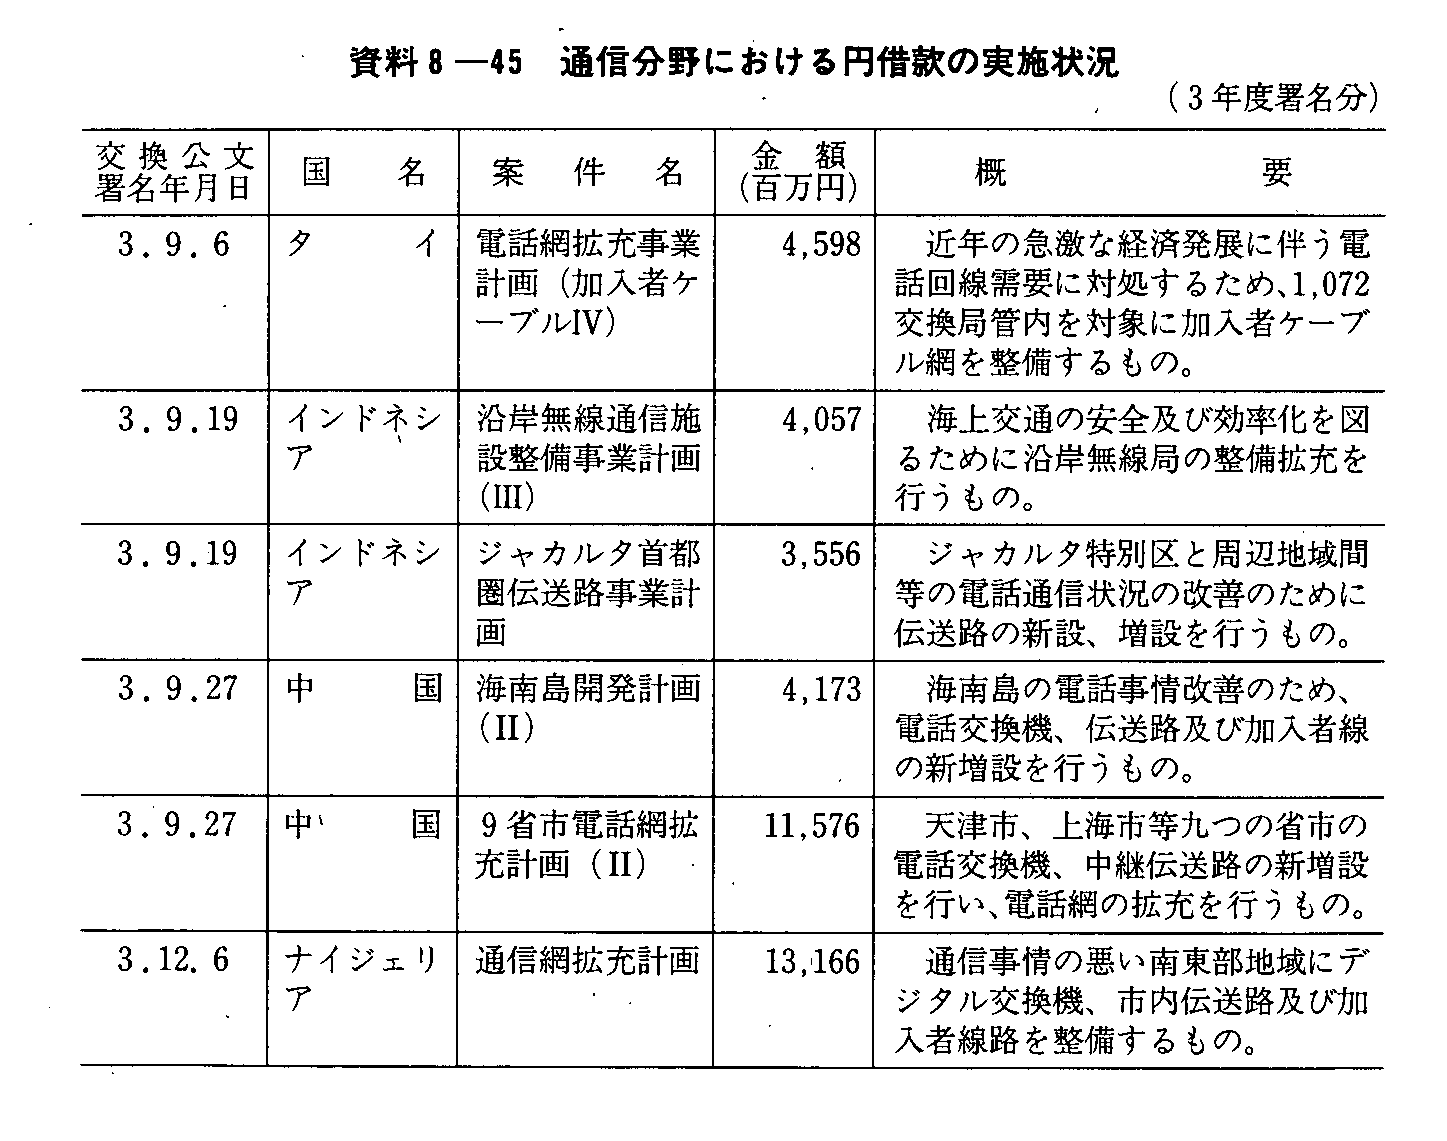 資料8-45 通信分野における円借款の実施状況(3年度署名分)